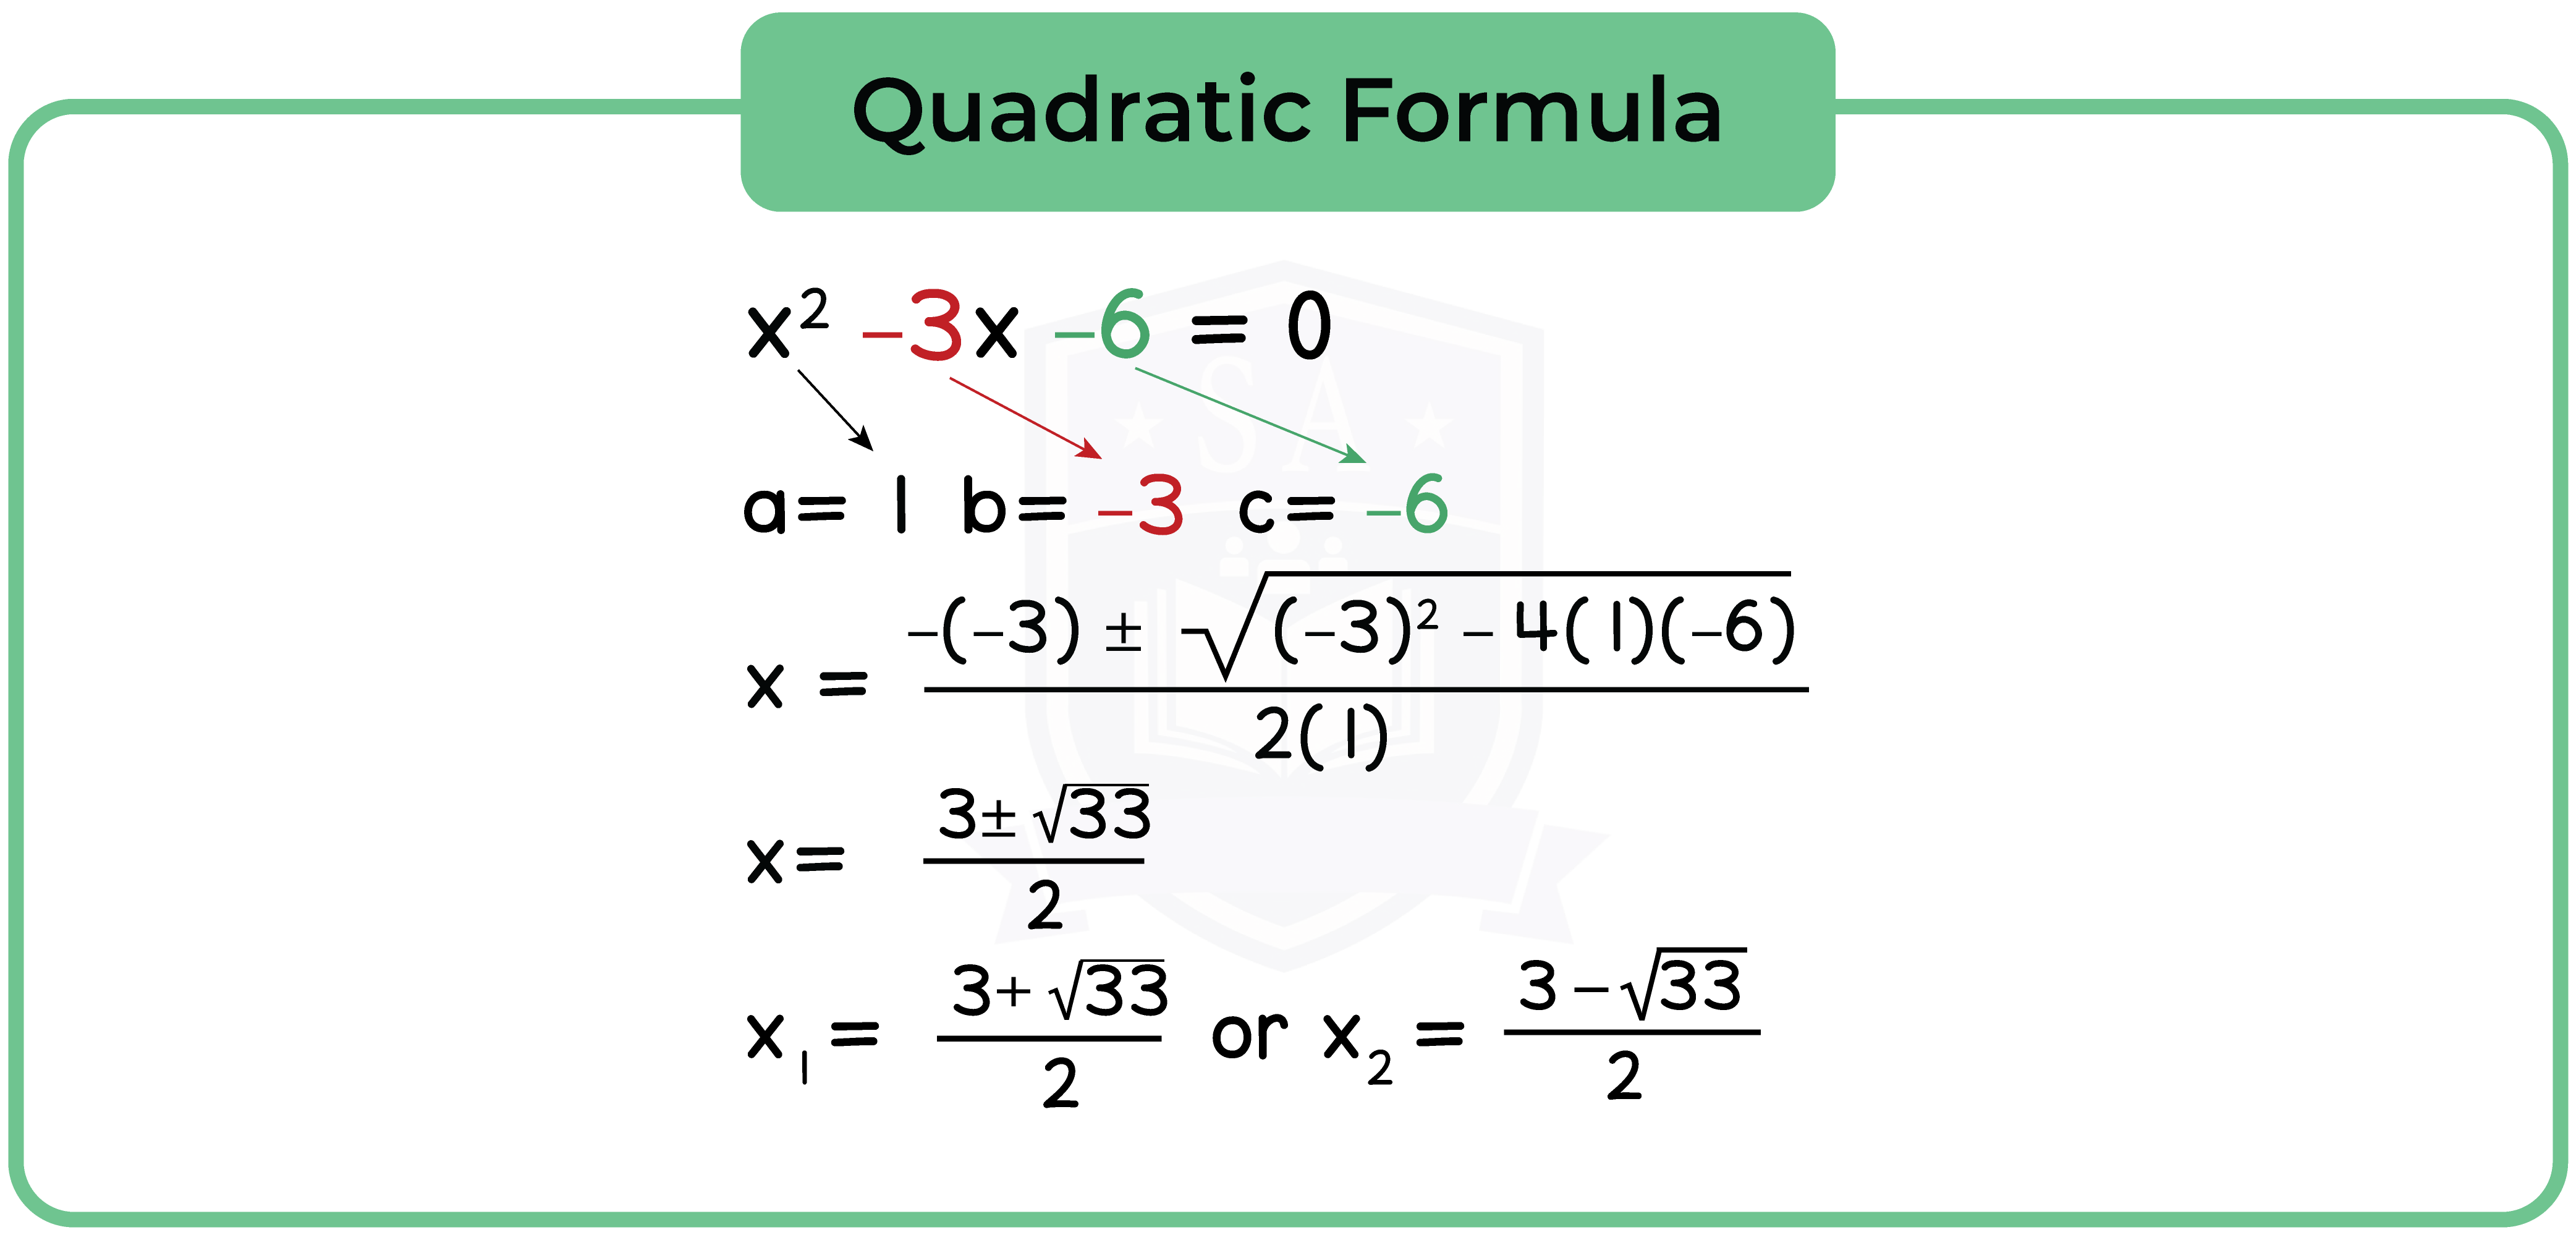 edexcel_igcse_mathematics a_topic 18_quadratic equations_007_Quadratic Formula